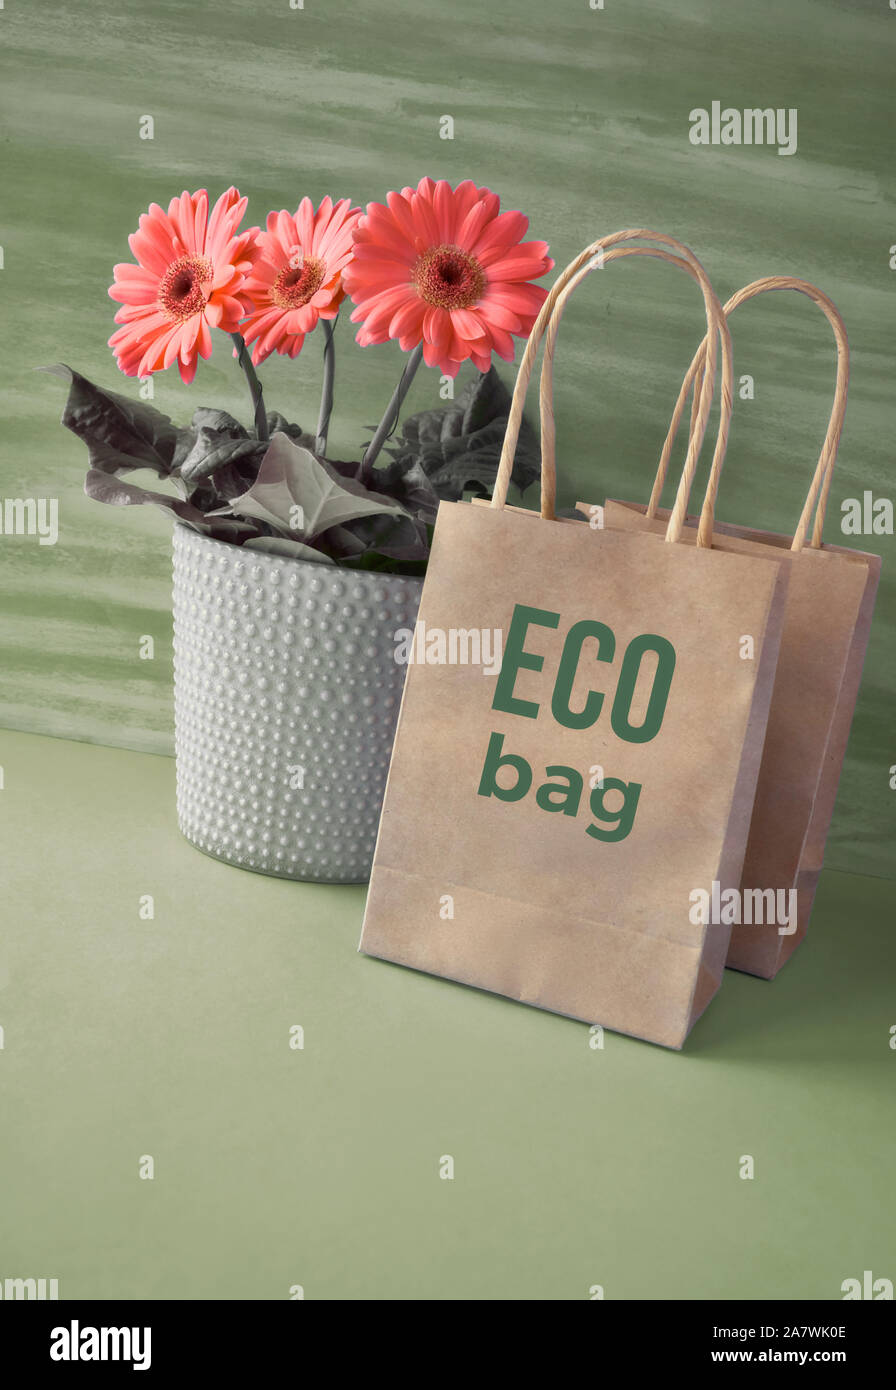 Coral Gerbera daisy flowers und Handwerk papper Einkaufstaschen auf grünem Papier Hintergrund. Frühling nachhaltiger Lebensstil Konzept Bild mit Text "Eco ba Stockfoto